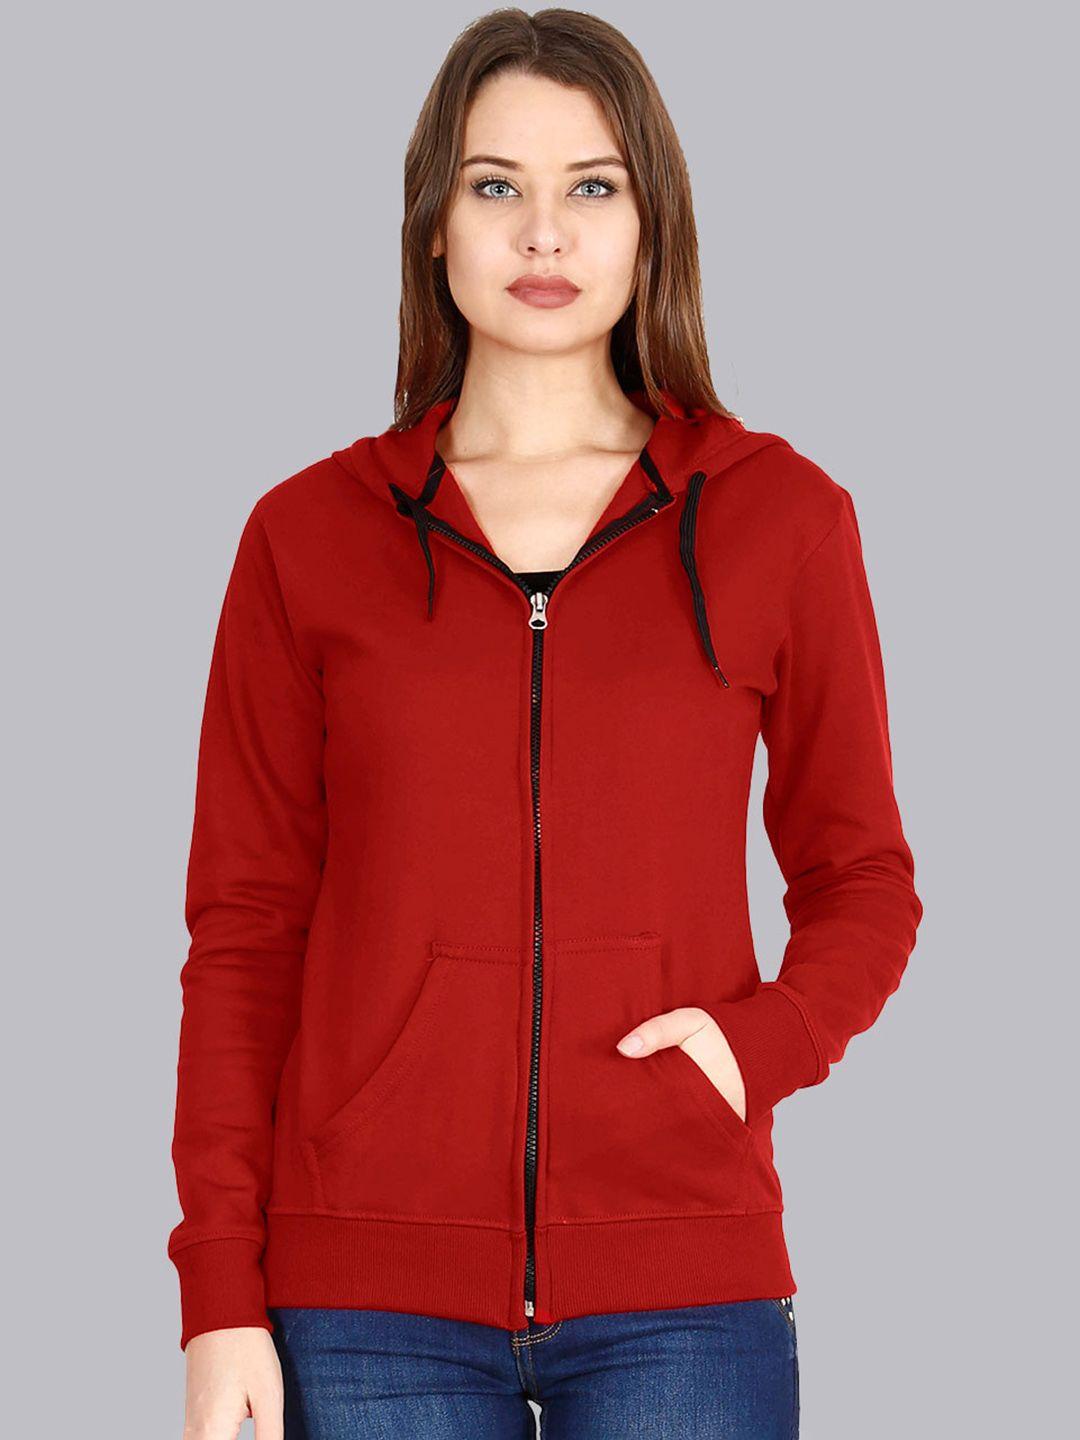 fleximaa-women-red-solid-hooded-sweatshirt